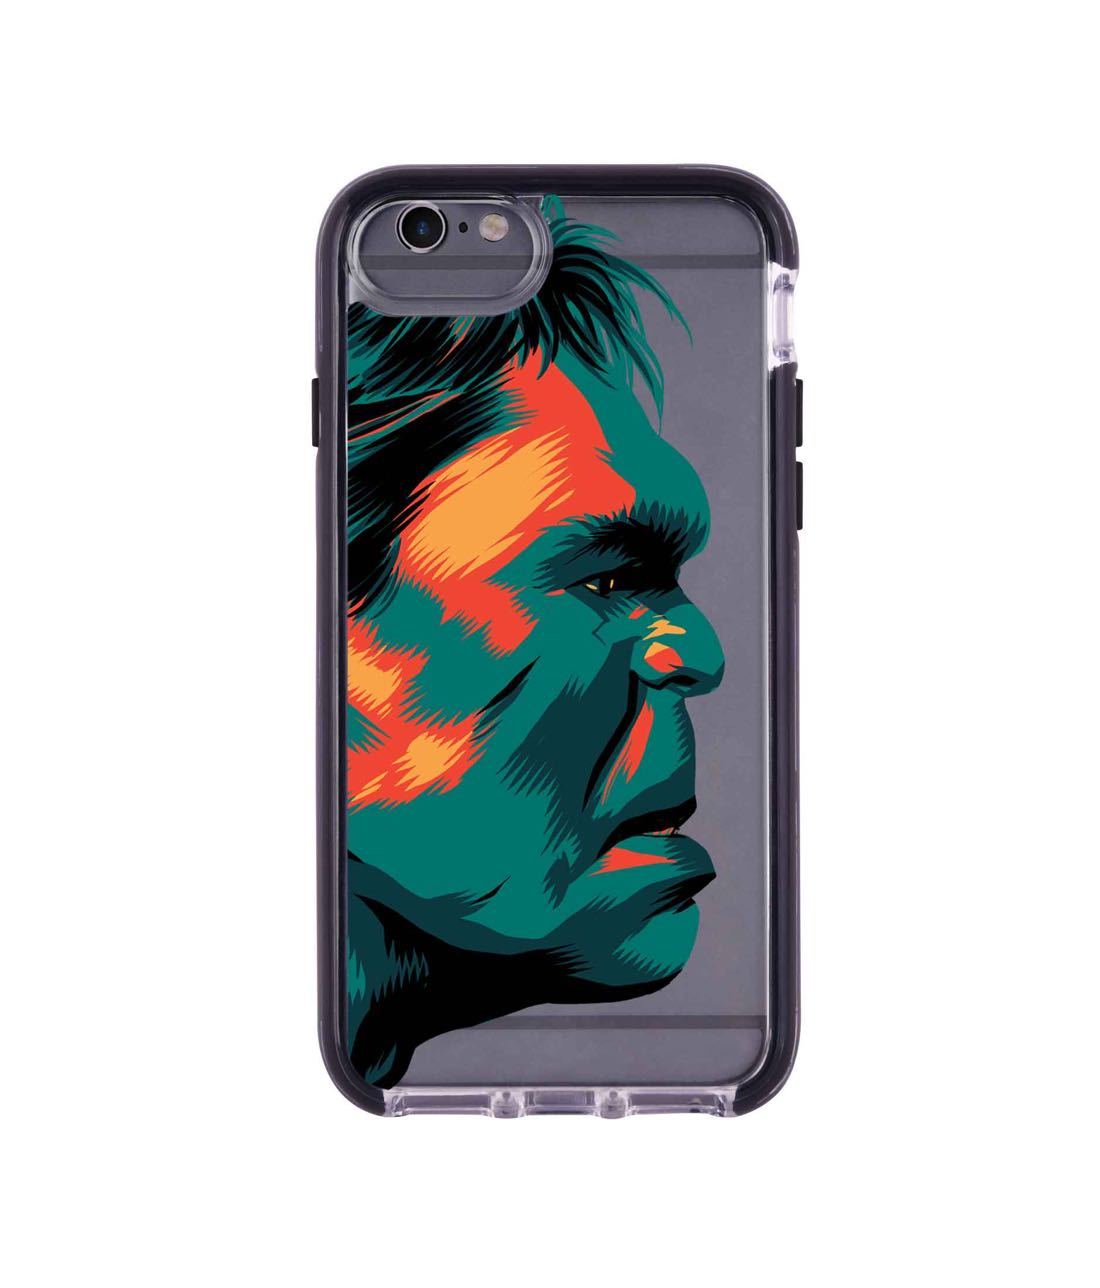 Illuminated Hulk - Extreme Phone Case for iPhone 6 Plus